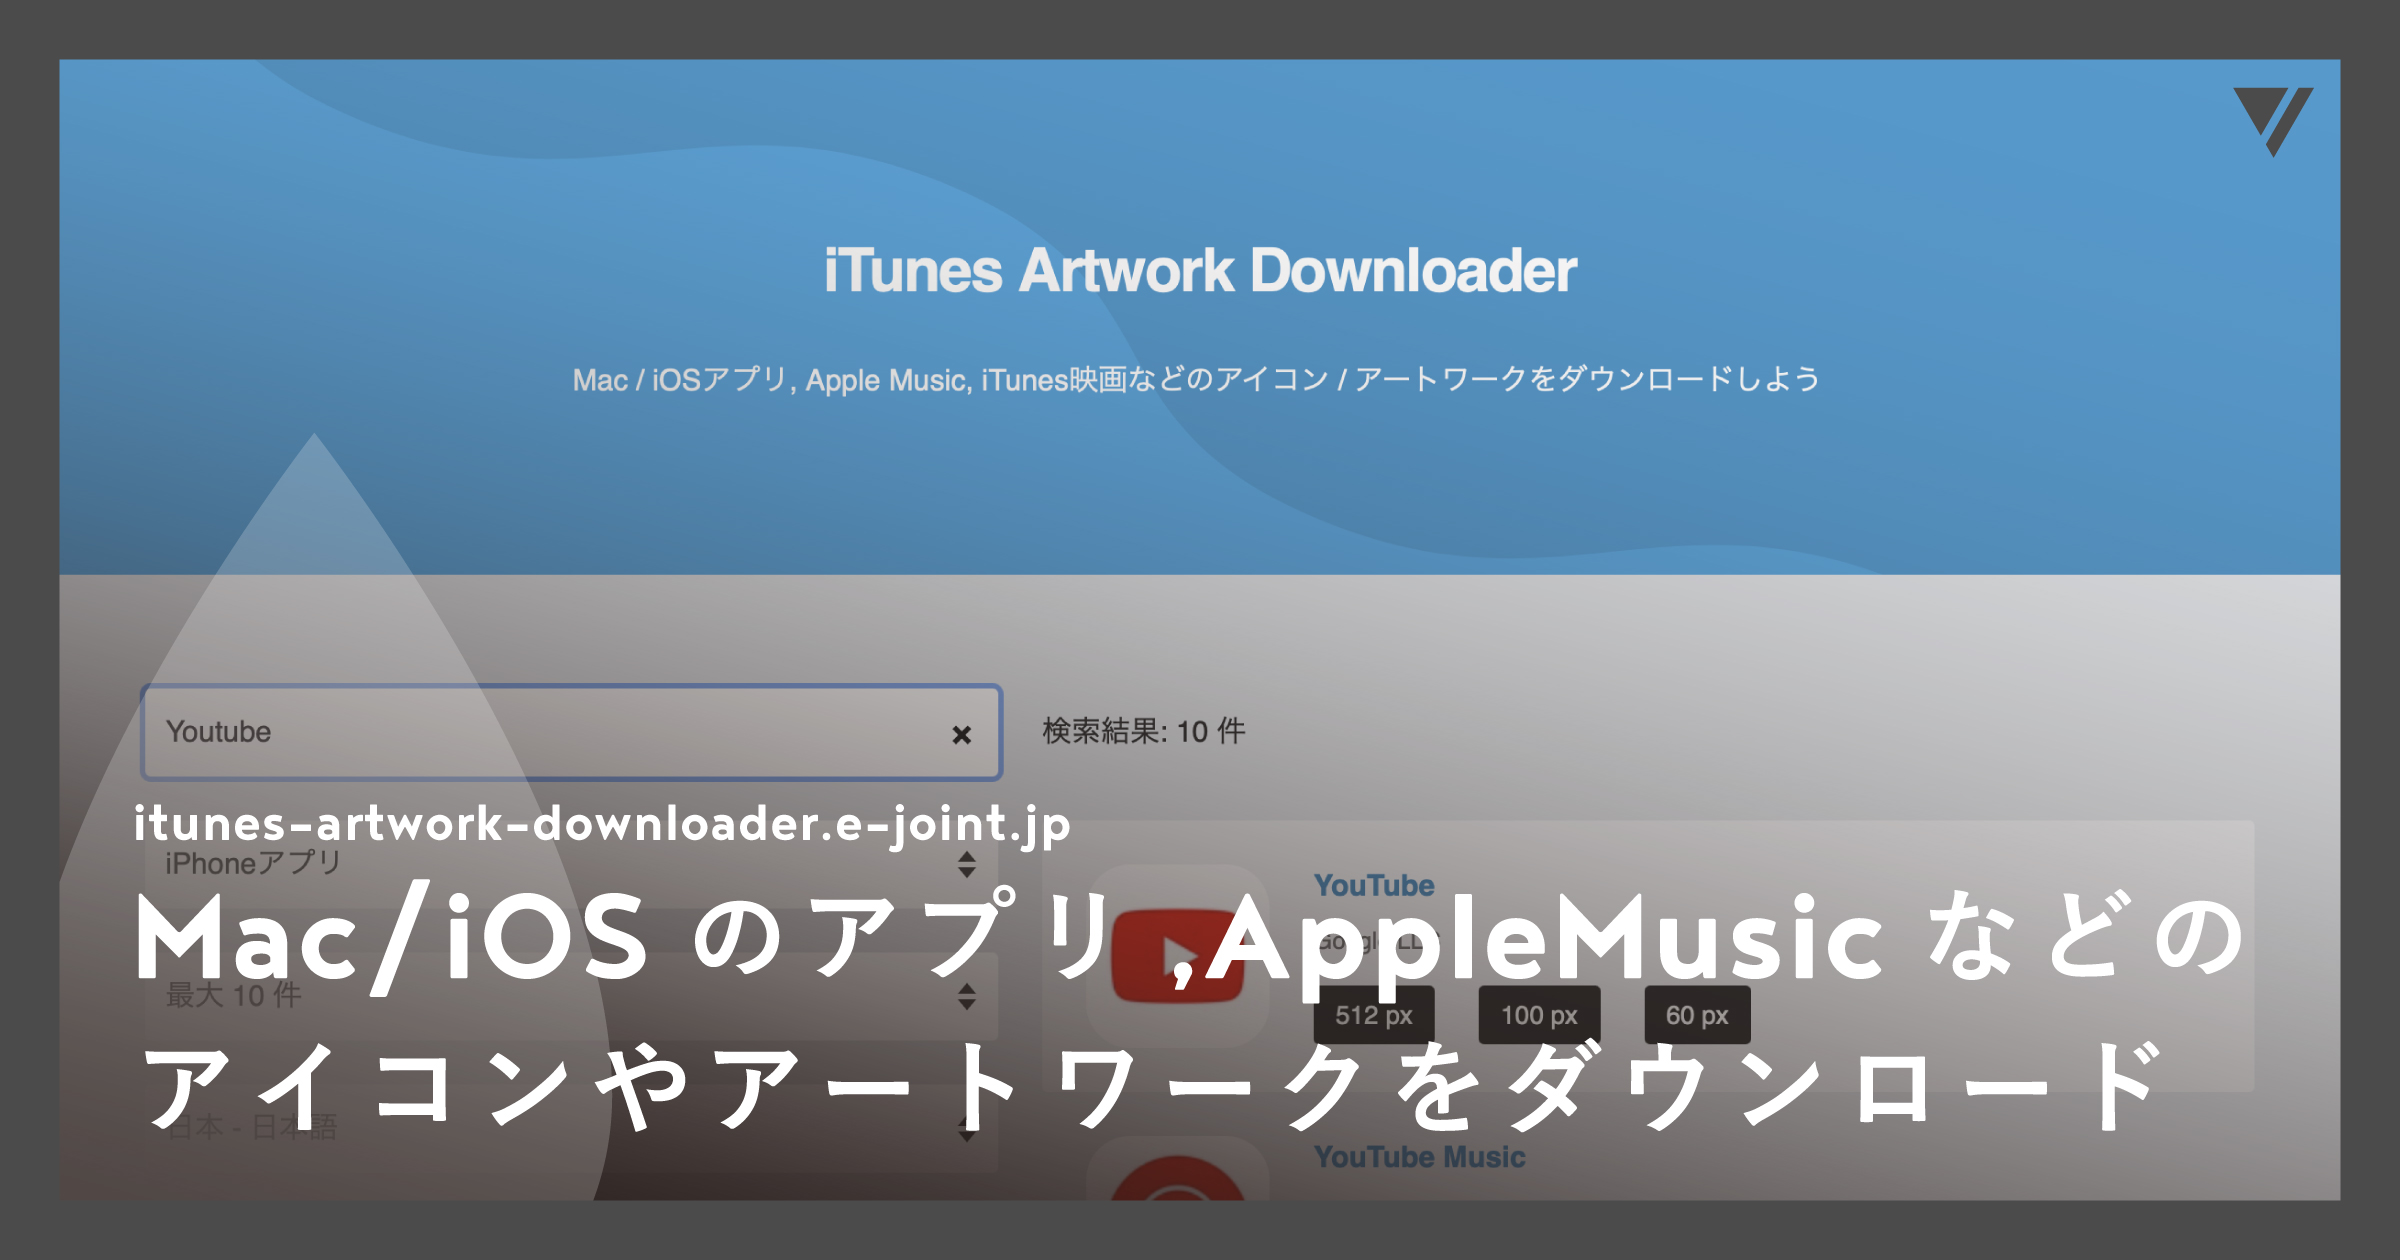 「Mac/iOSのアプリ,AppleMusic,iTunes映画などのアイコンやアートワークをダウンロードできる、iTunesArtworkDownloader」のアイキャッチ画像